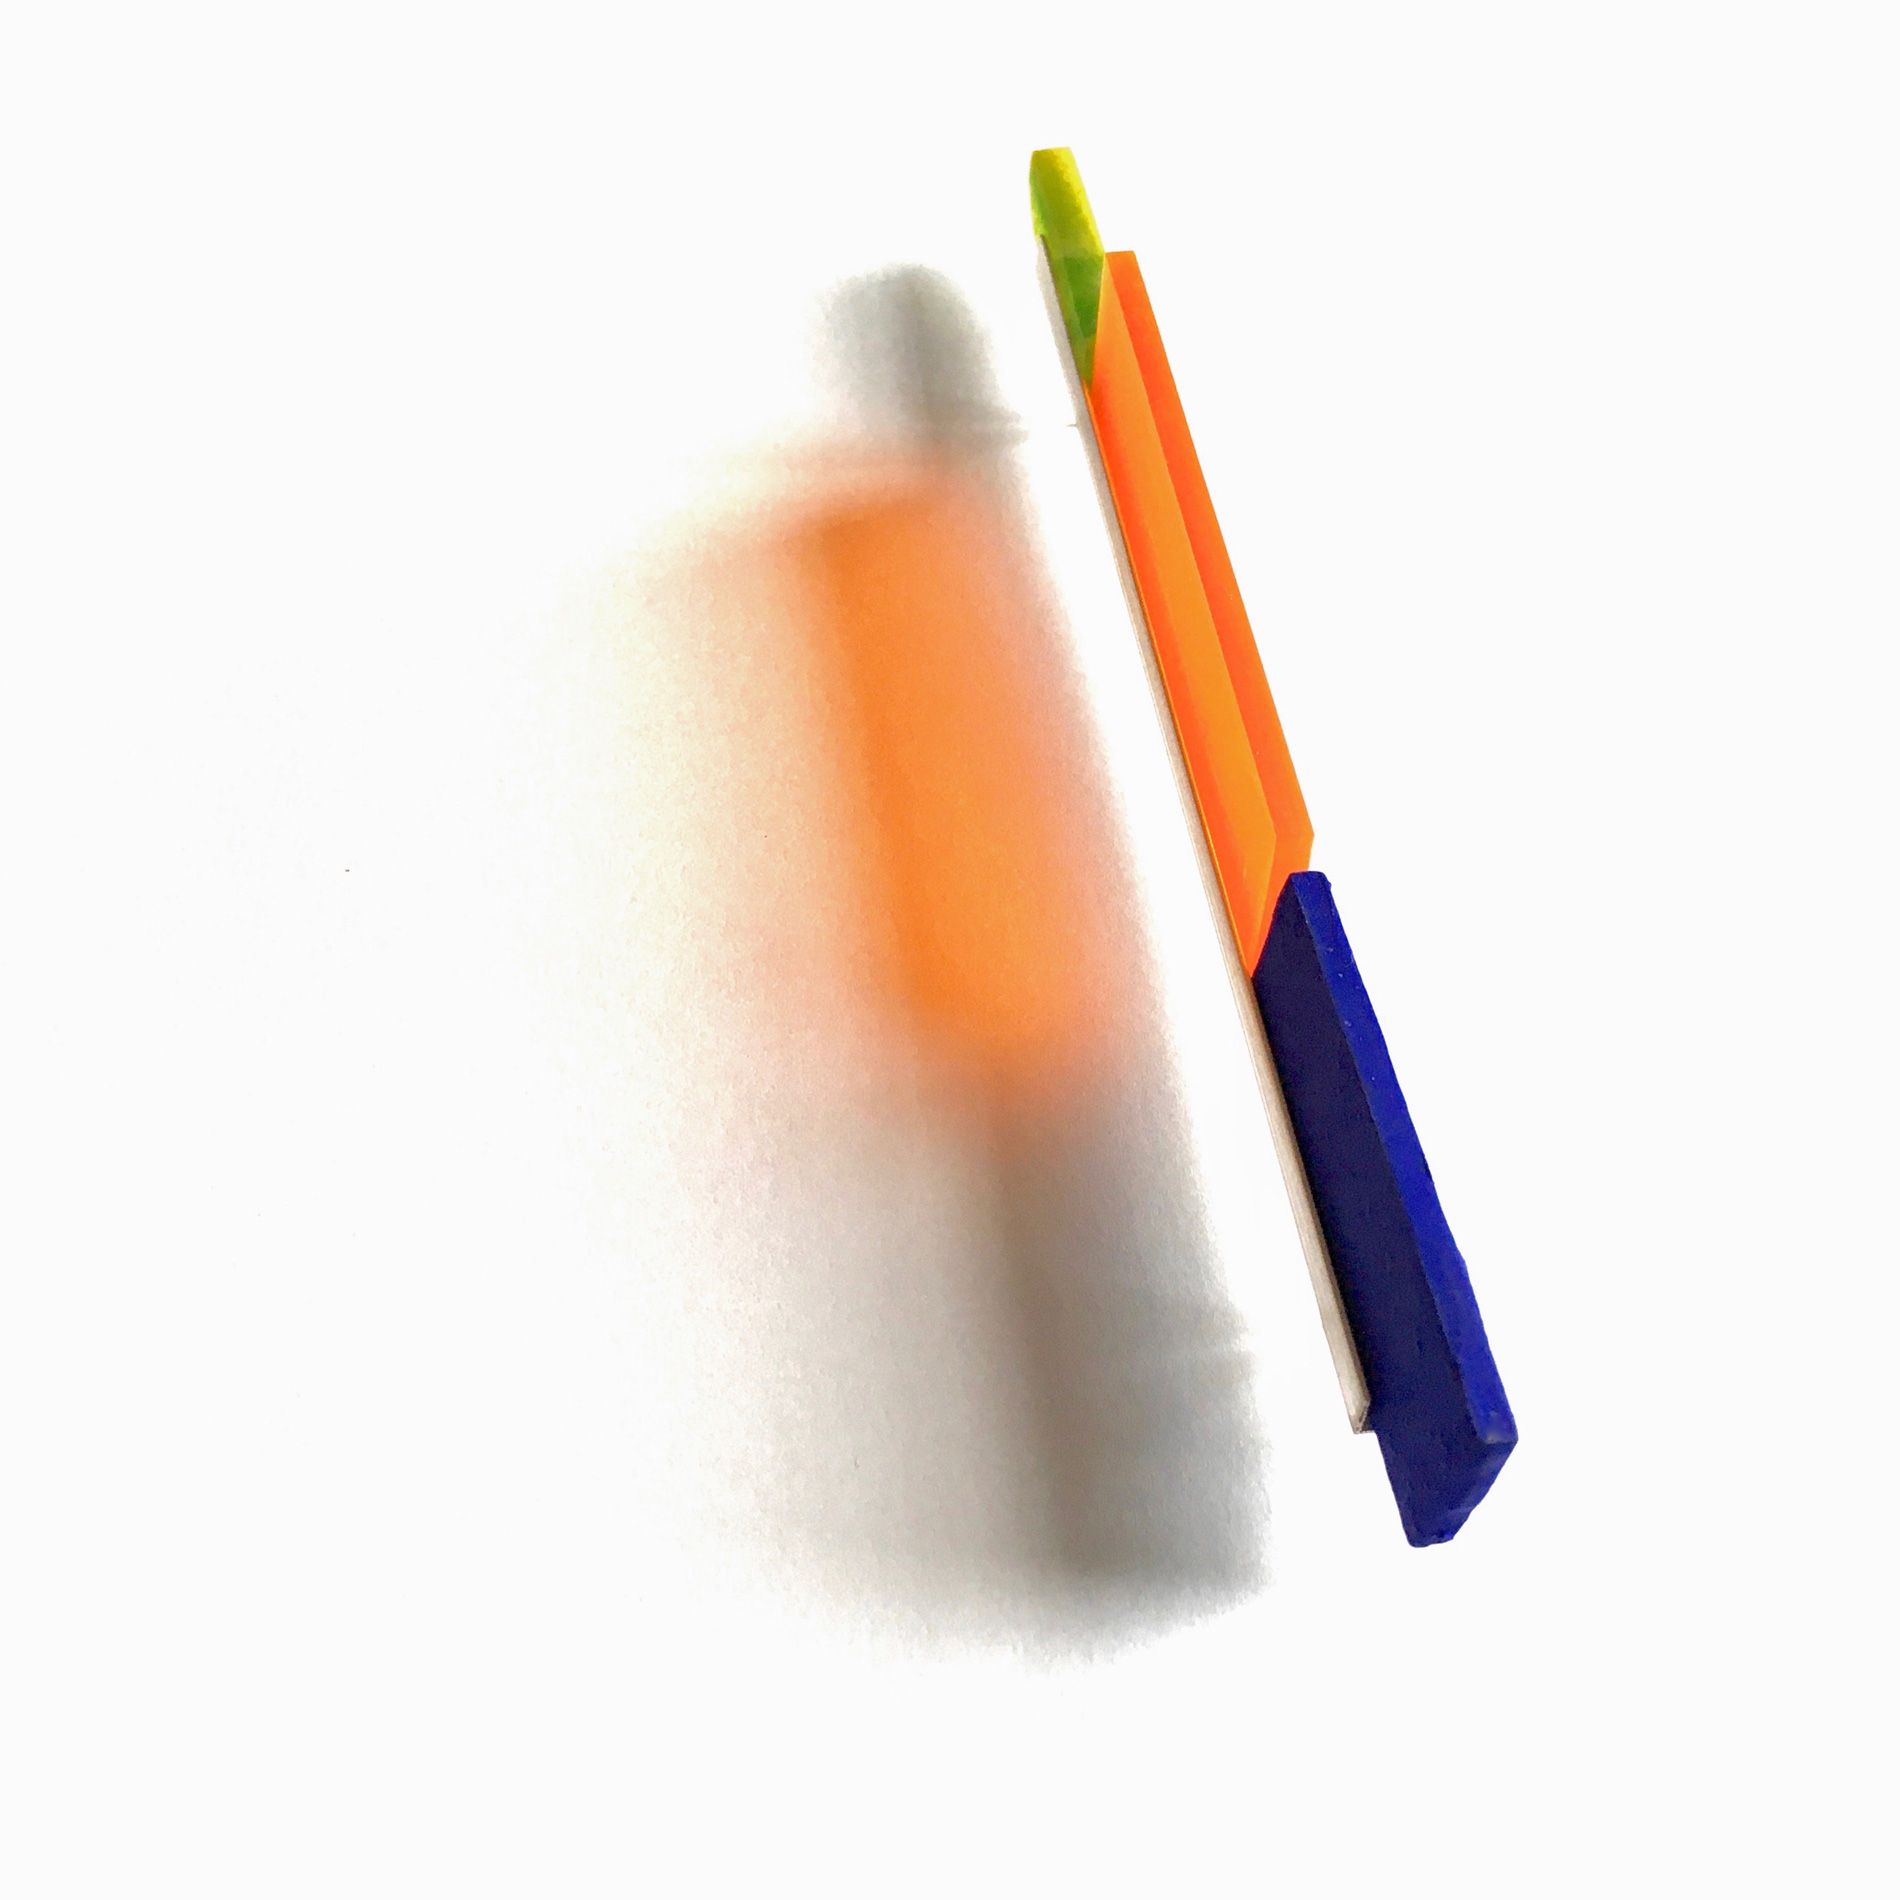 Pour cette série de broches, Claire Lavendhomme s'est inspirée du livre de mathématique "The Elements of Euclid" dans lequel les calculs sont symbolisés par des bâtons de couleurs | Claire Lavendhomme - Euclid color - Broche. Argent, résine, acrylique, pigments - 120 x 8 x 30 mm - 2019